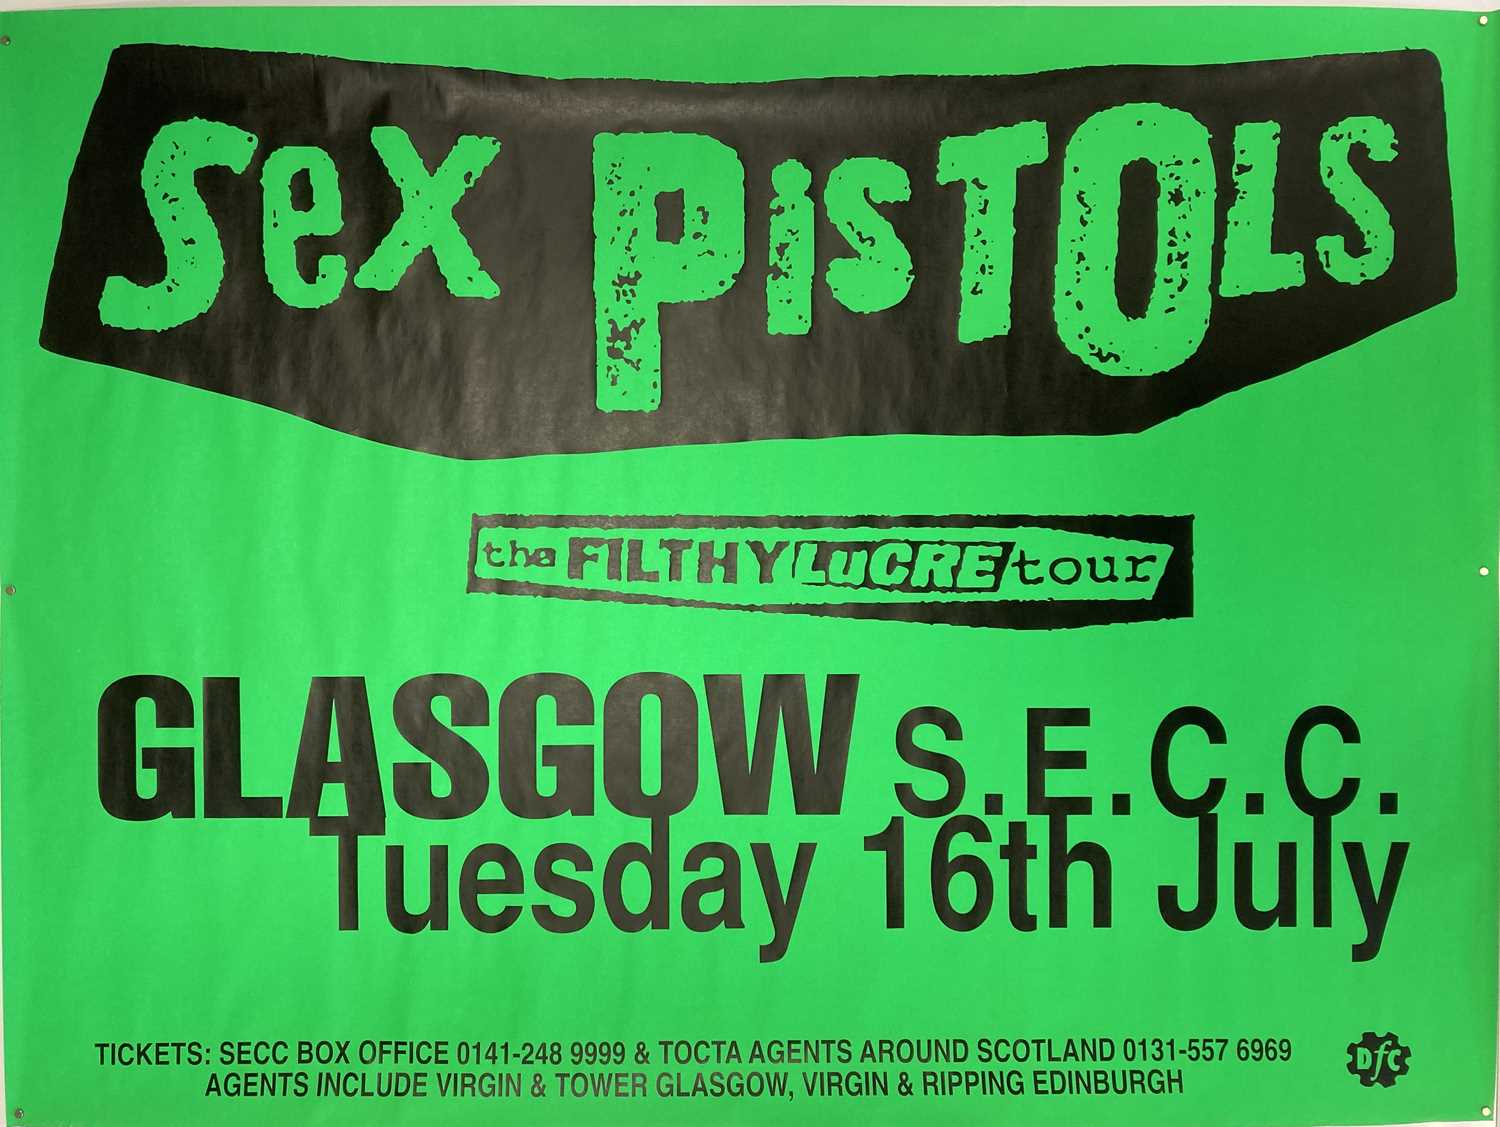 Lot 399 Sex Pistols Filthy Lucre Tour Poster 